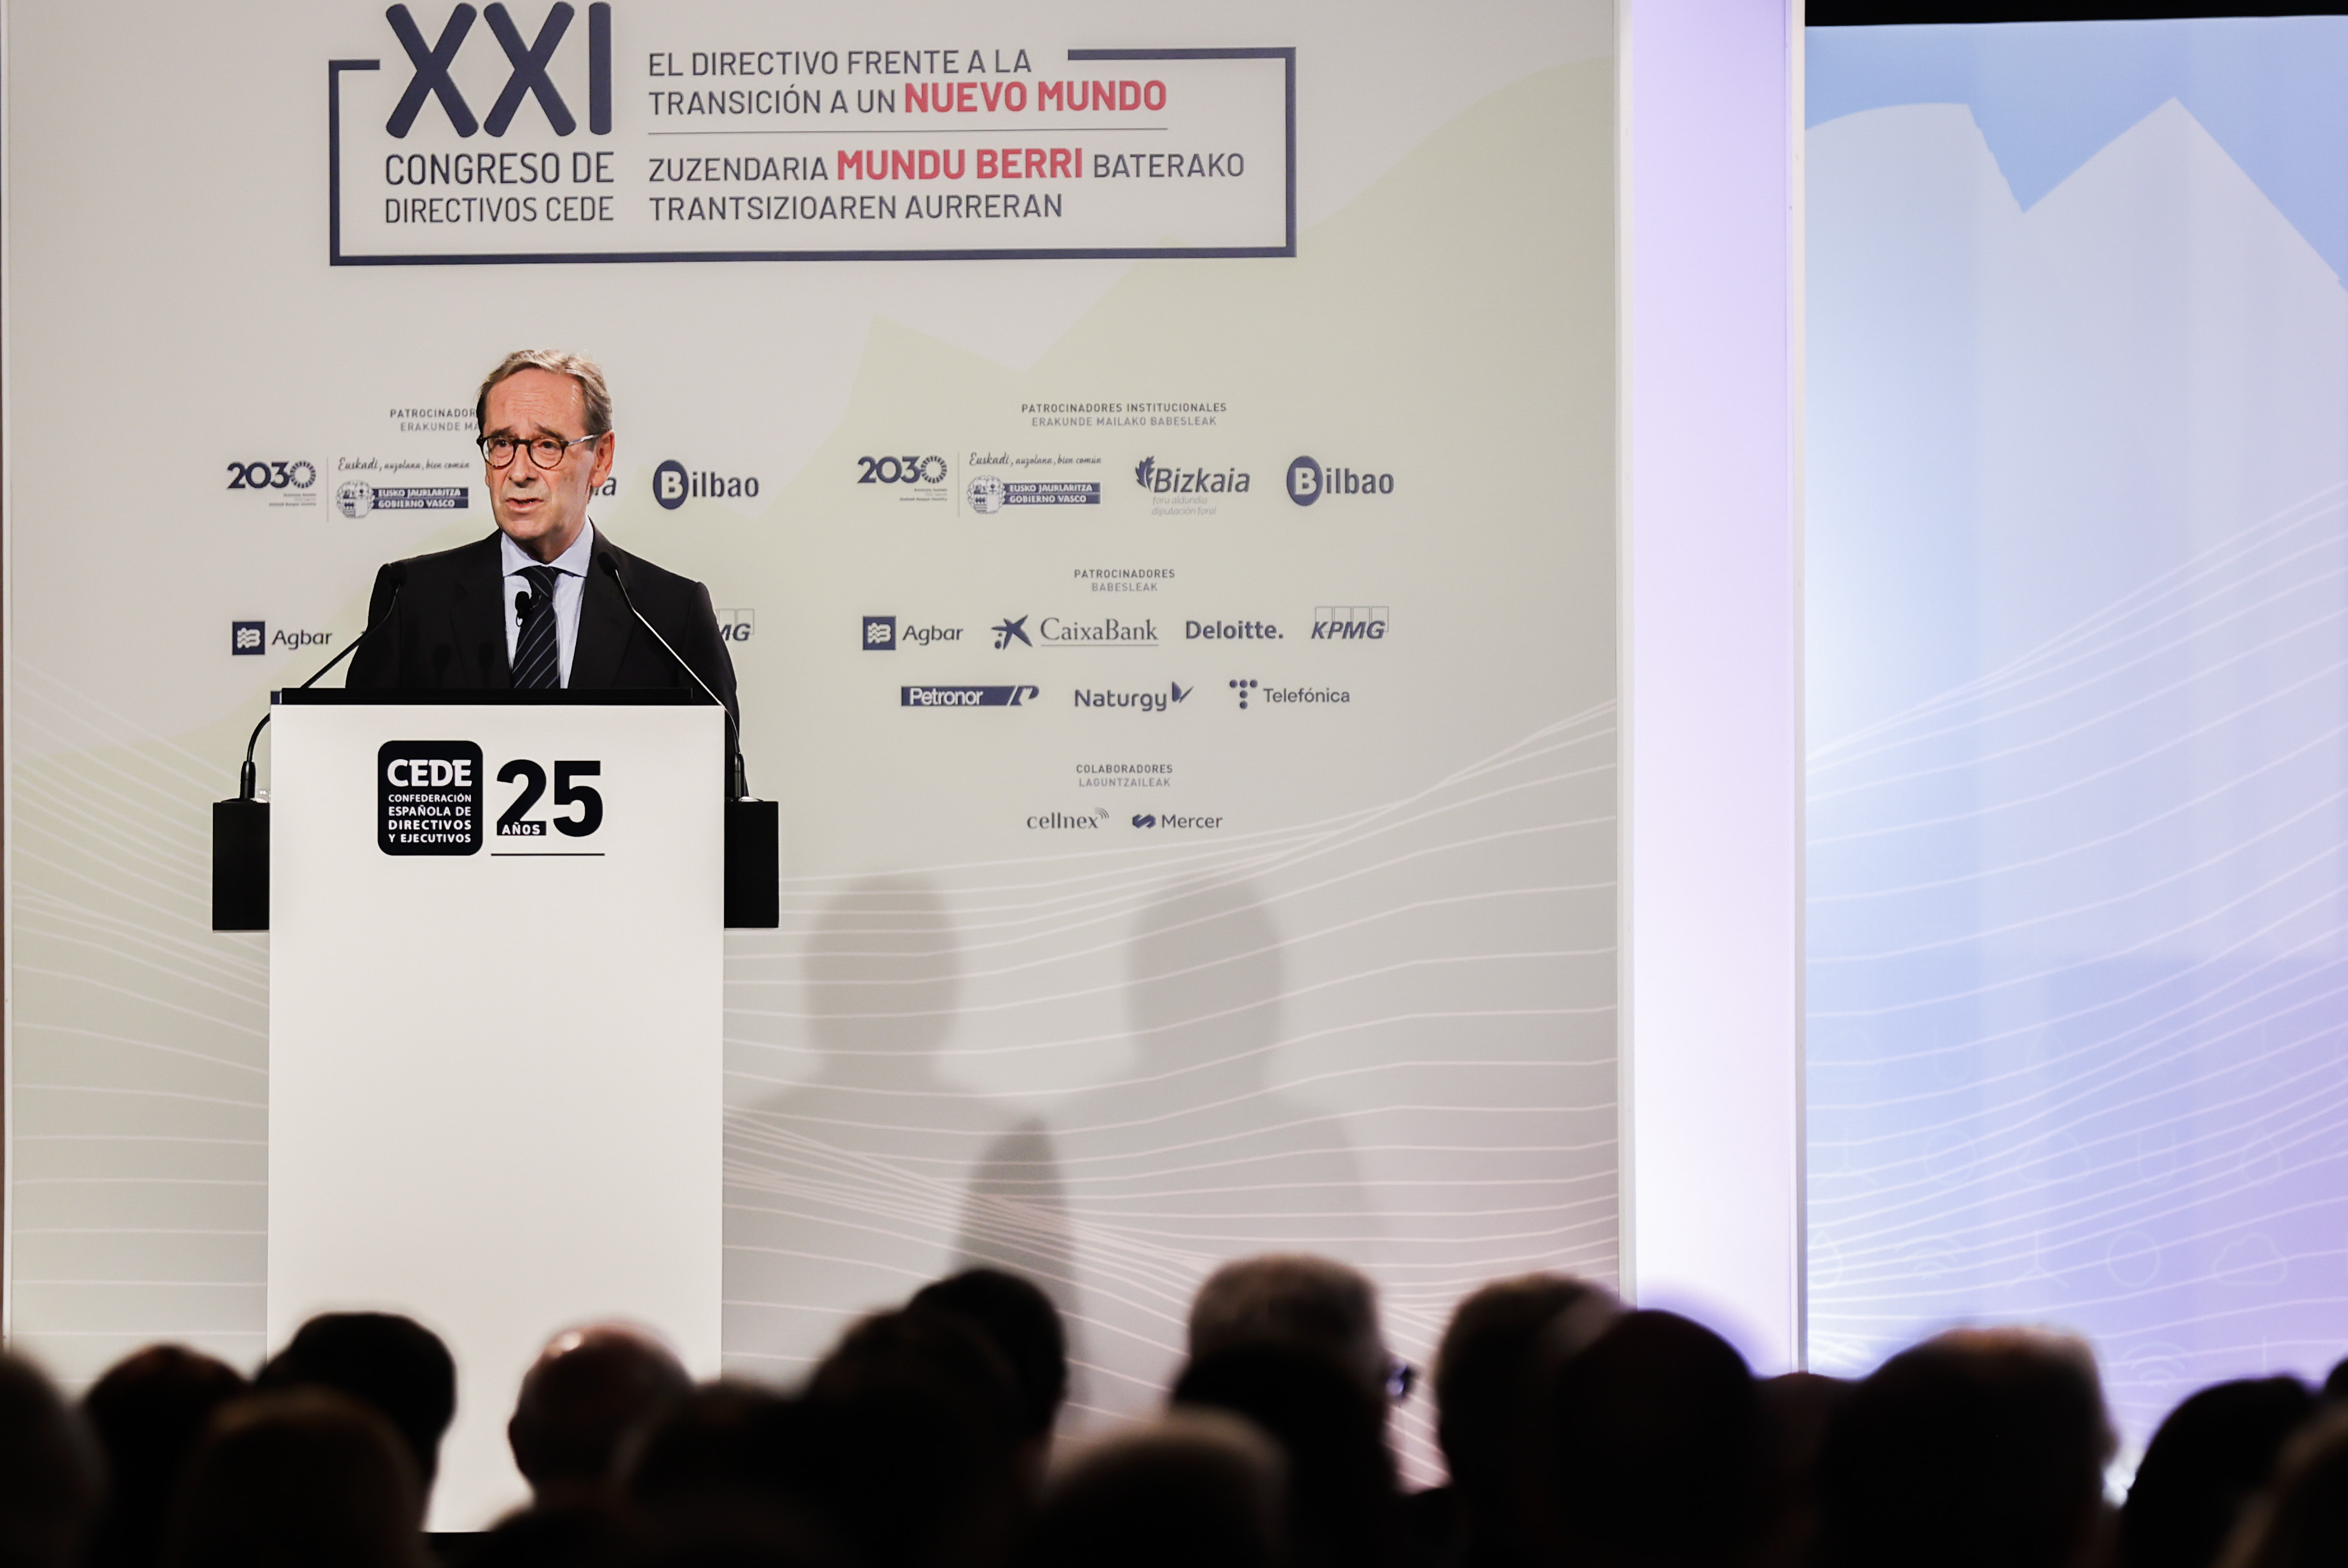 Gregorio Villalabeitia, president of Kutxabank, during his speech at the XXI CEDE Congress